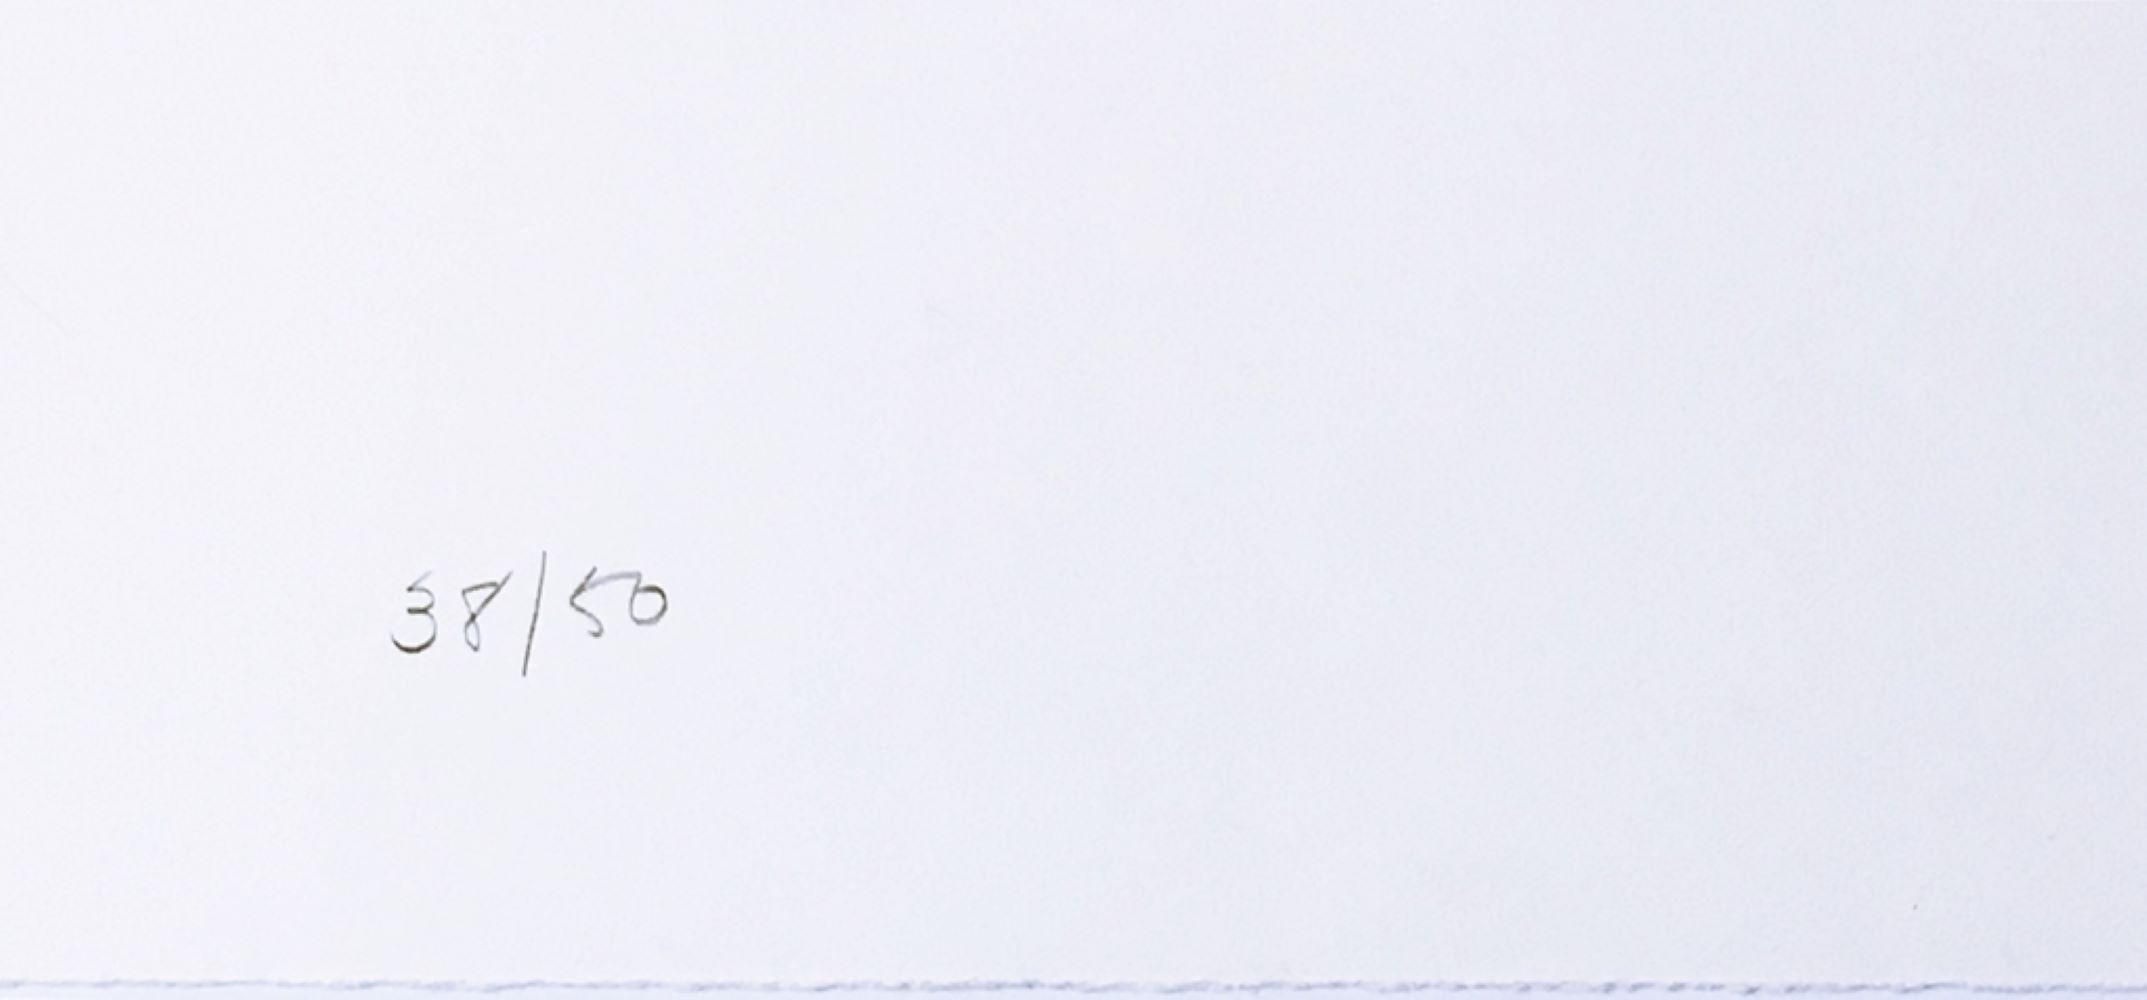 Gael Stack
Sans titre, extrait du portefeuille Art Against AIDS, 1988
Gravure sur bois sur papier, avec des bords en relief. Signé à la main. Numéroté. Tampon de l'imprimeur et de l'éditeur. Non encadré.
Signé et numéroté à la main sur le recto